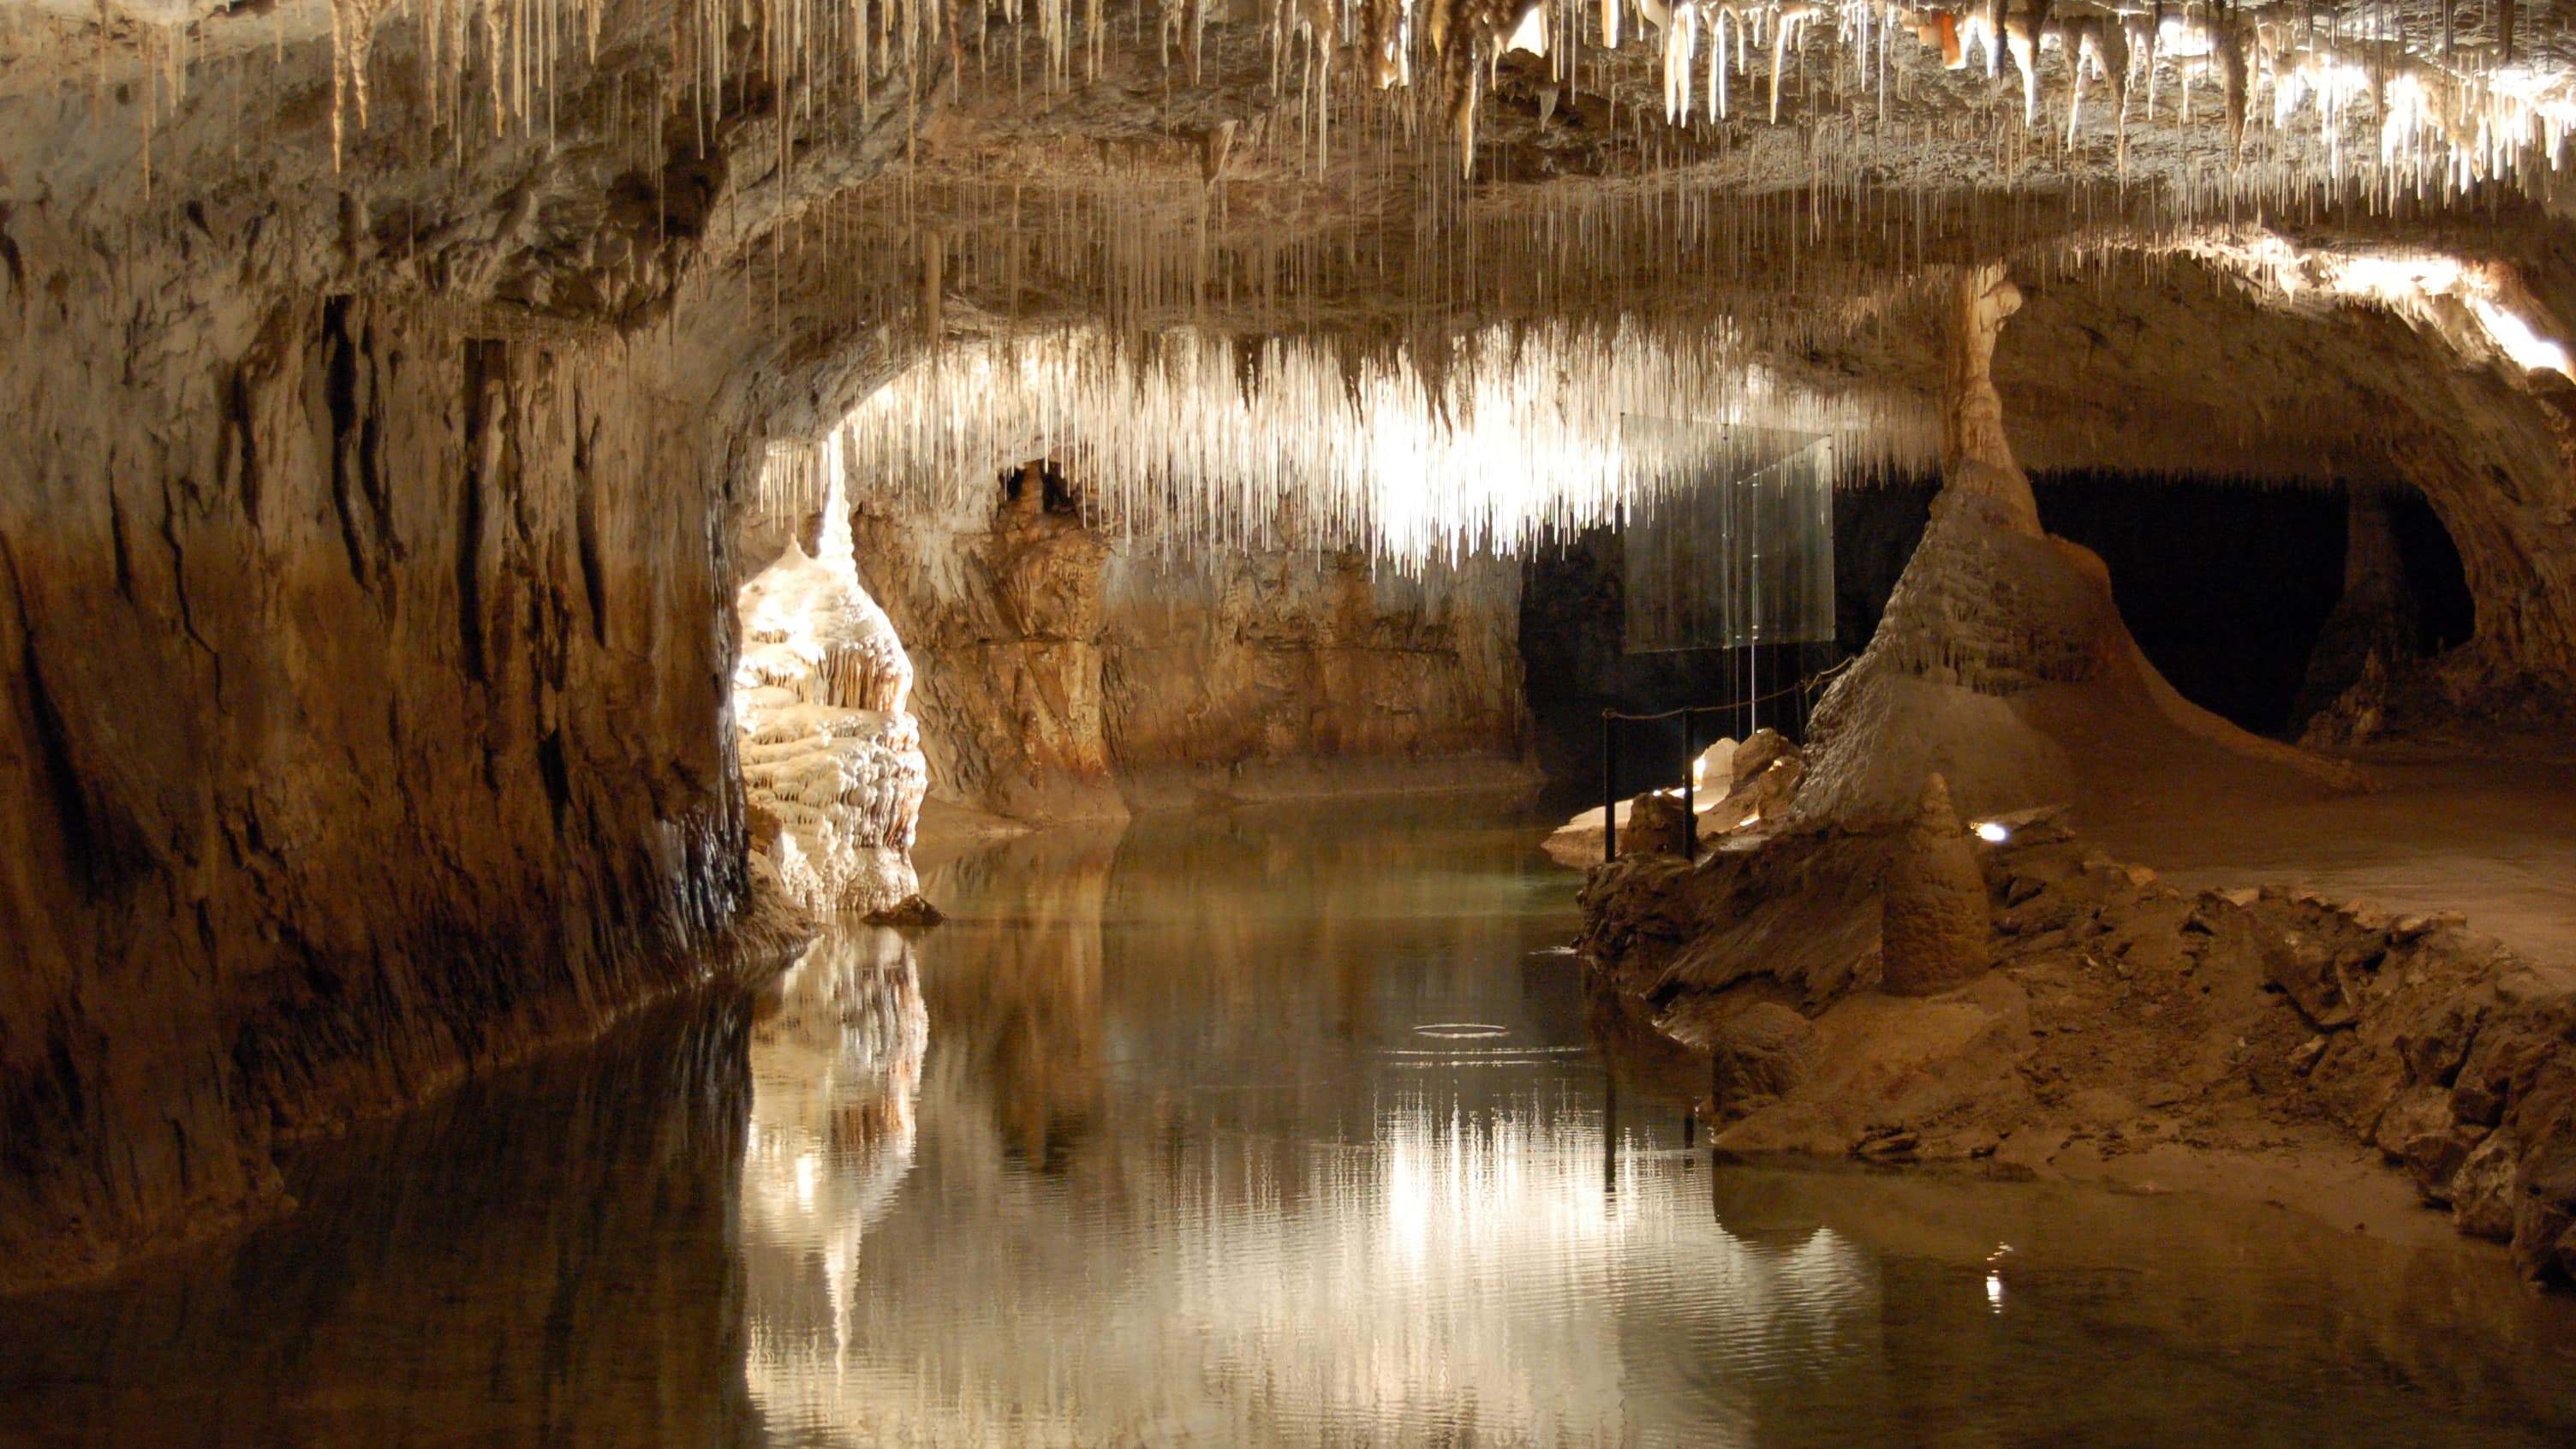  Plafond de stalactites fistuleuses au-dessus d’un lac souterrain à la grotte de Choranche, dans le massif du Vercors